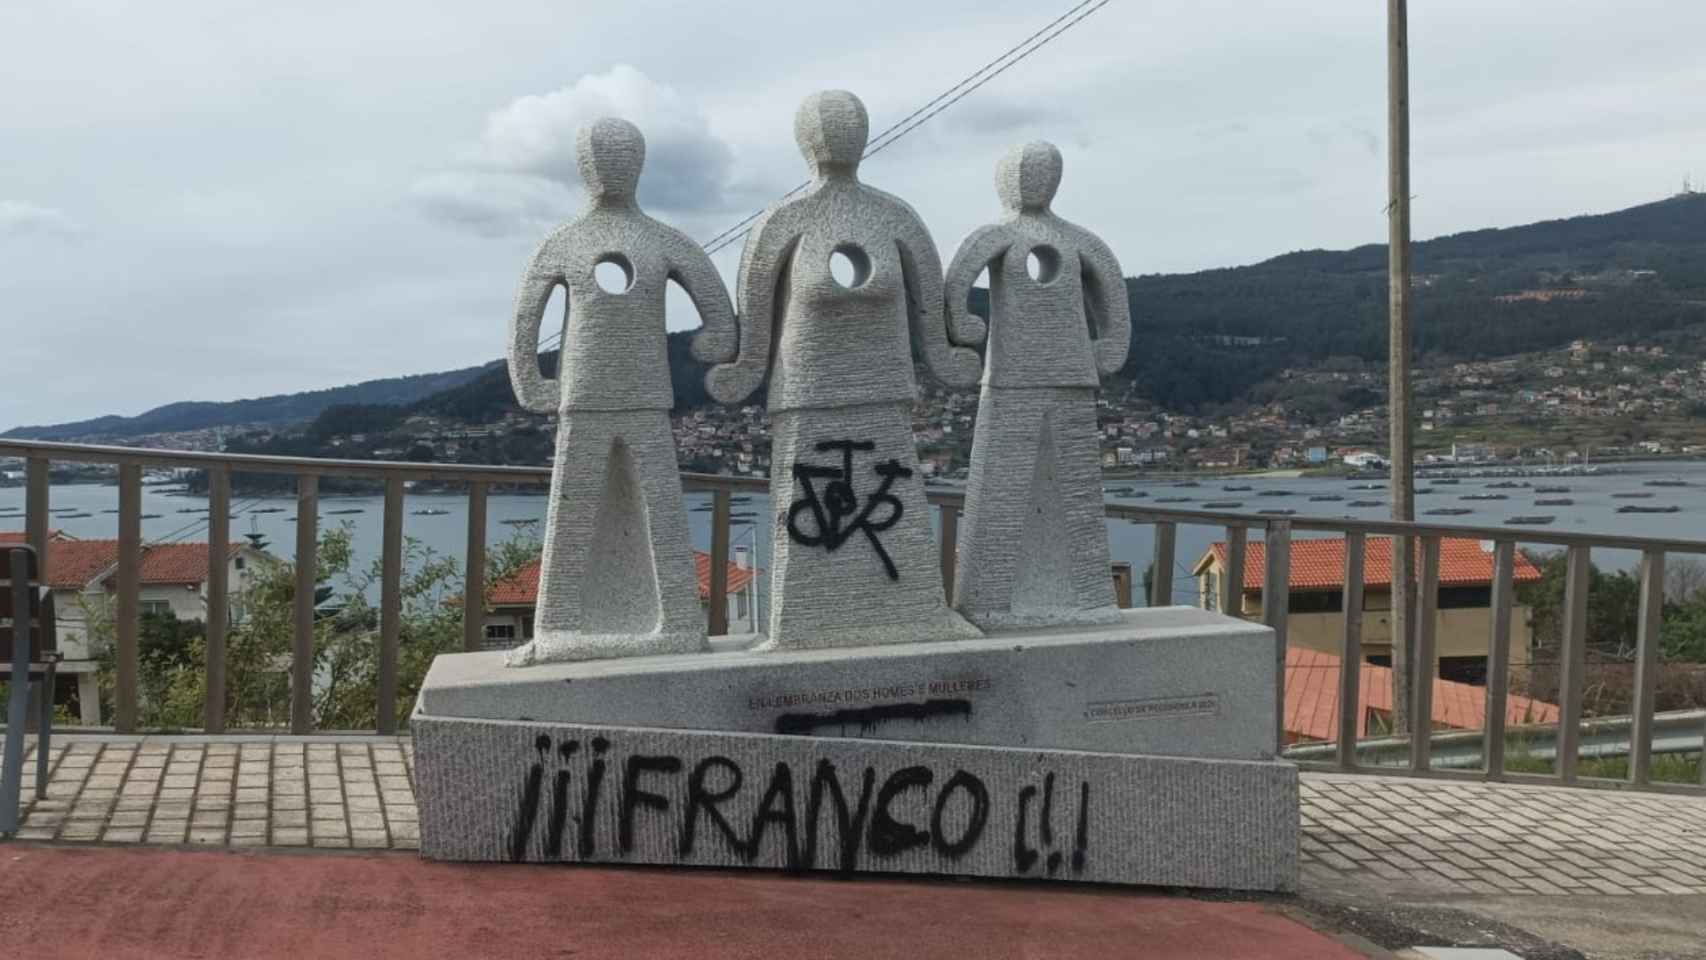 El monumento atacado con pintadas fascistas.